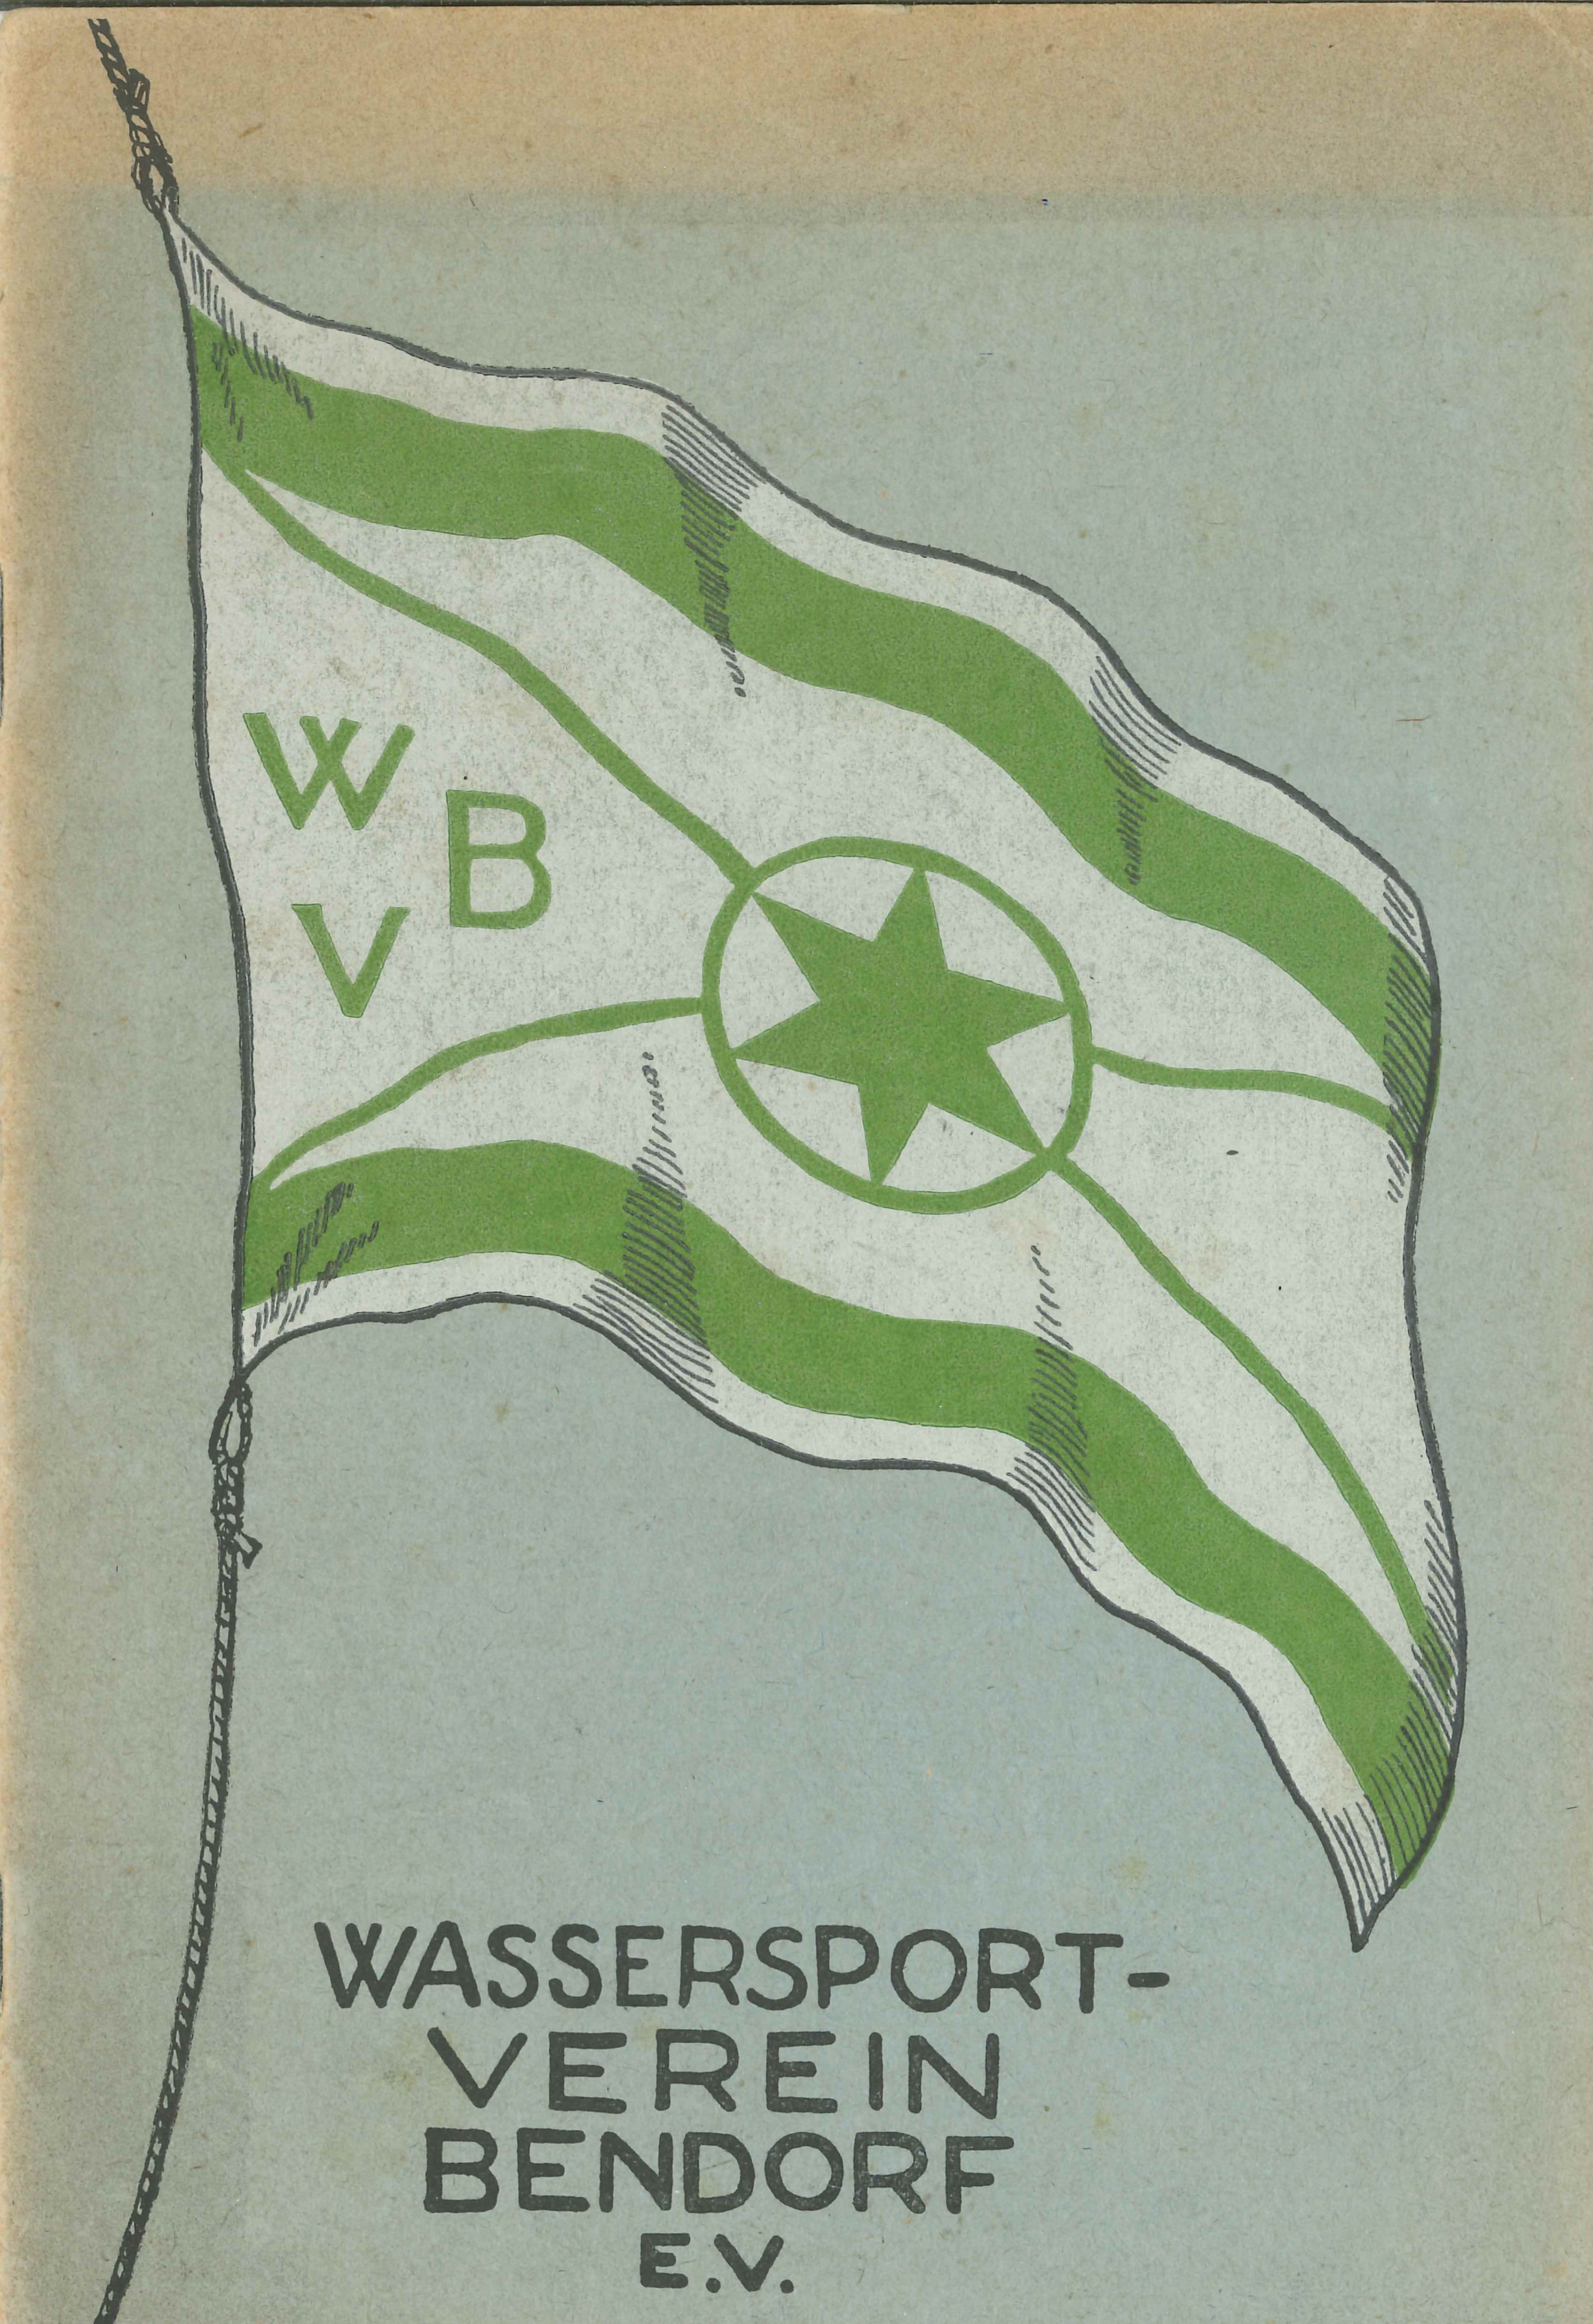 Monatsschrift Wassersportverein Bendorf e. V., 1929 (Rheinisches Eisenkunstguss-Museum CC BY-NC-SA)